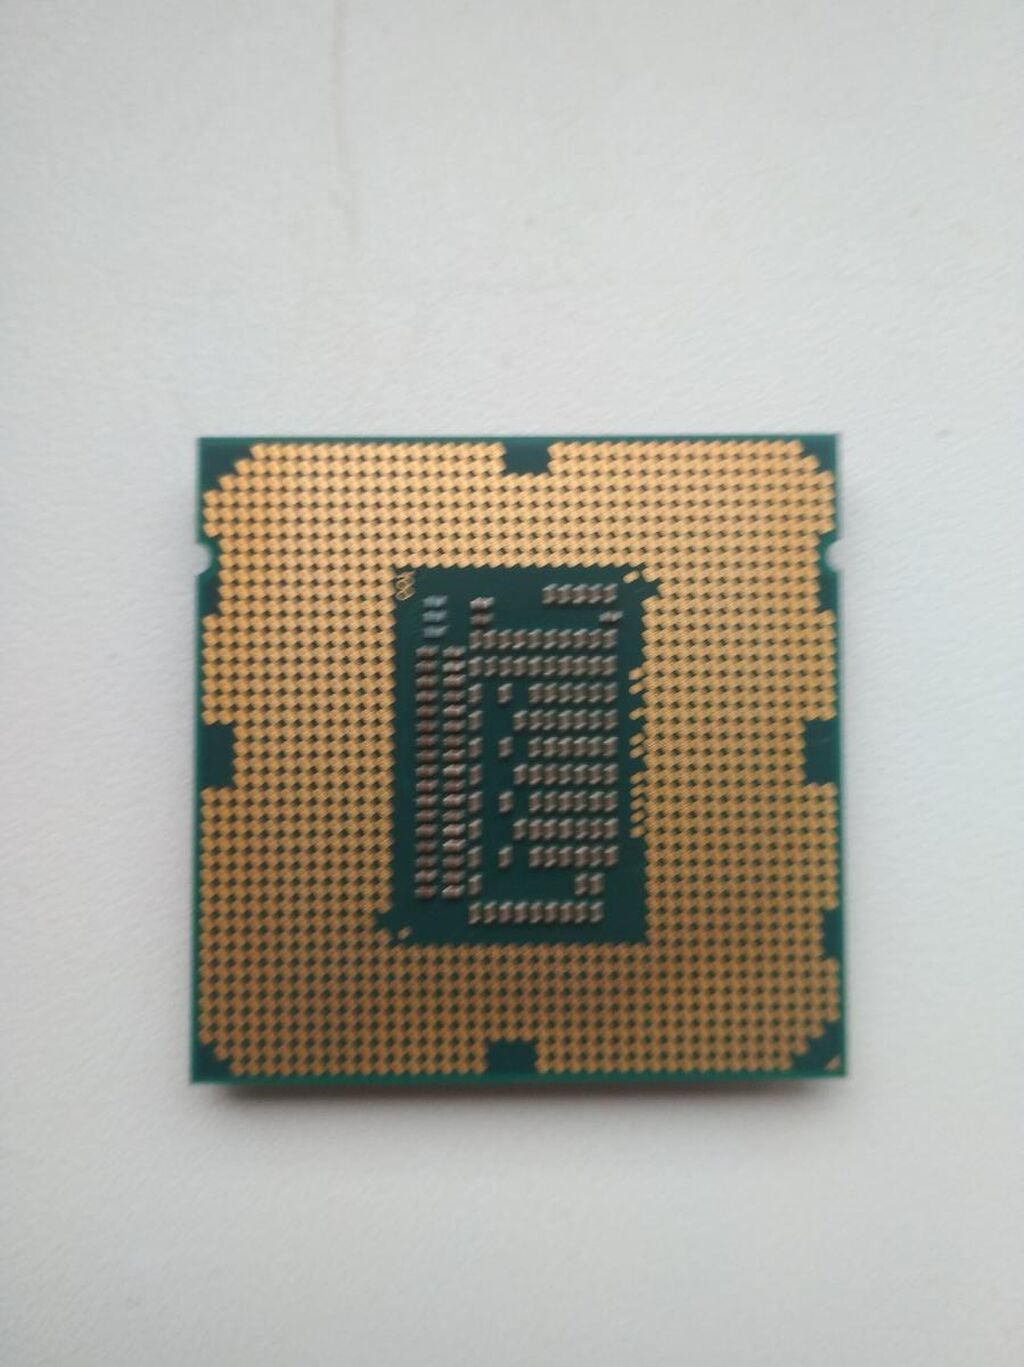 Процессор Intel Core i5-3570 Ivy Bridge. Intel 3570 сокет. Процессор Intel Core i5-3570t Ivy Bridge. Процессор Intel Core i5-3570s Ivy Bridge. 3570 сокет